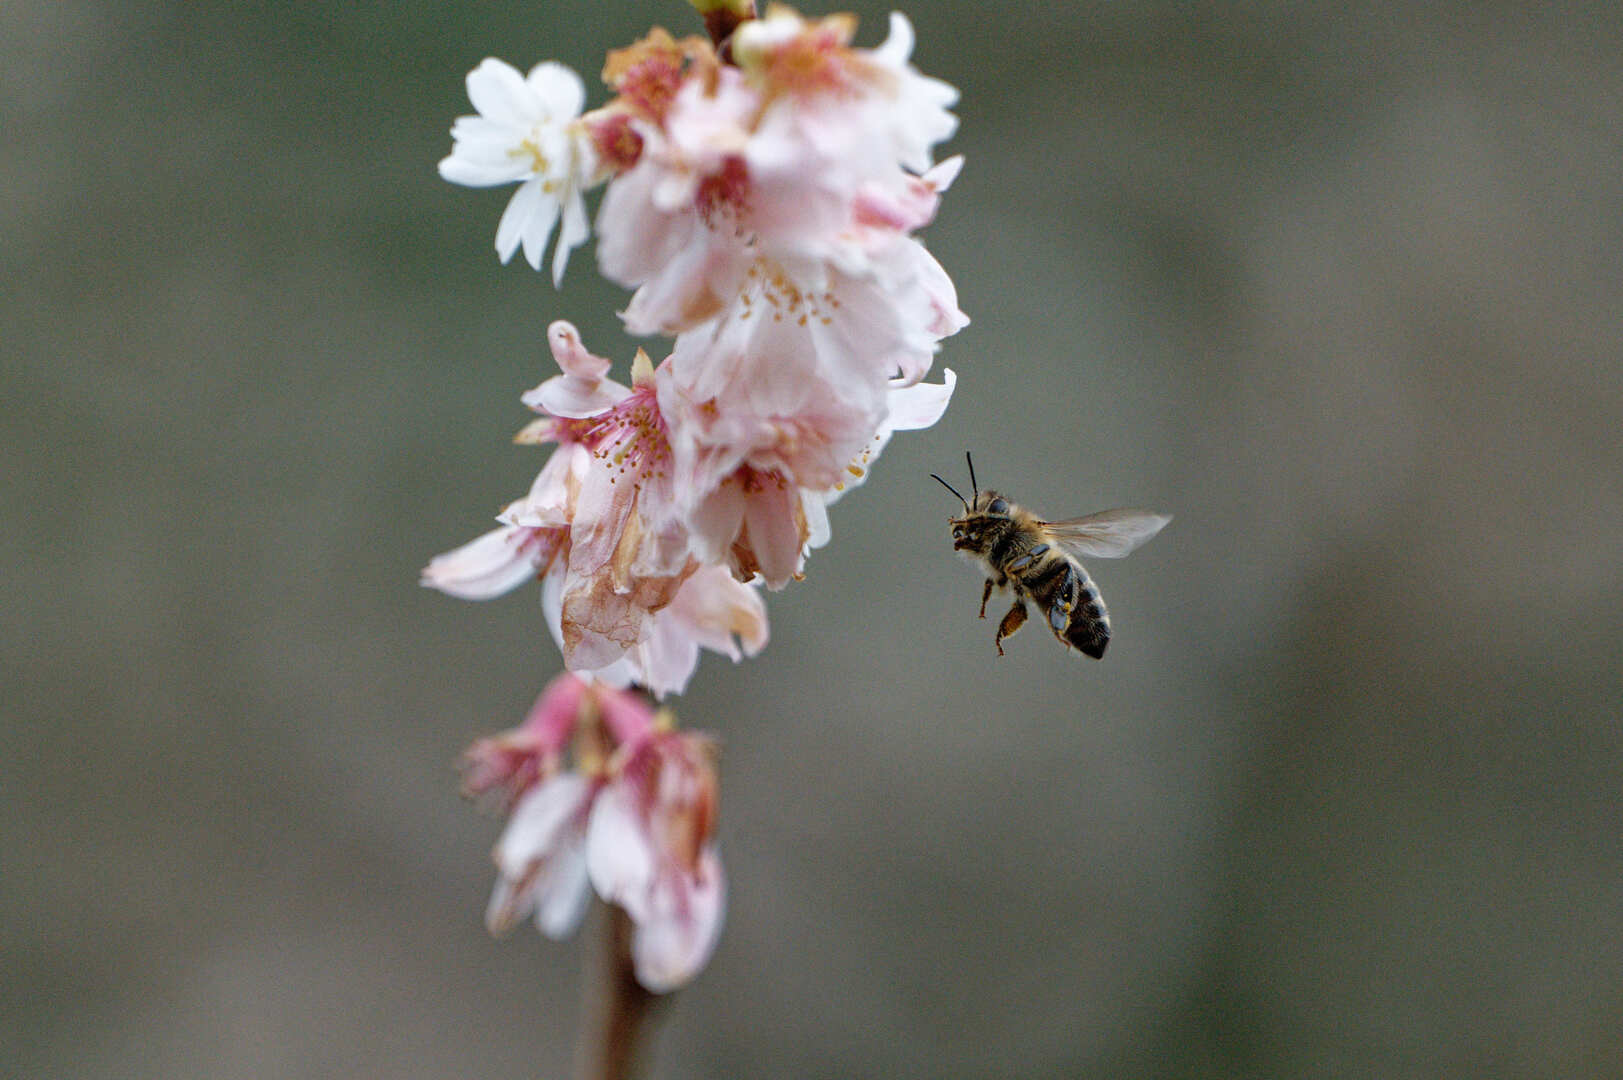 المغرب يضع برنامجا خاصا لدعم مربي النحل